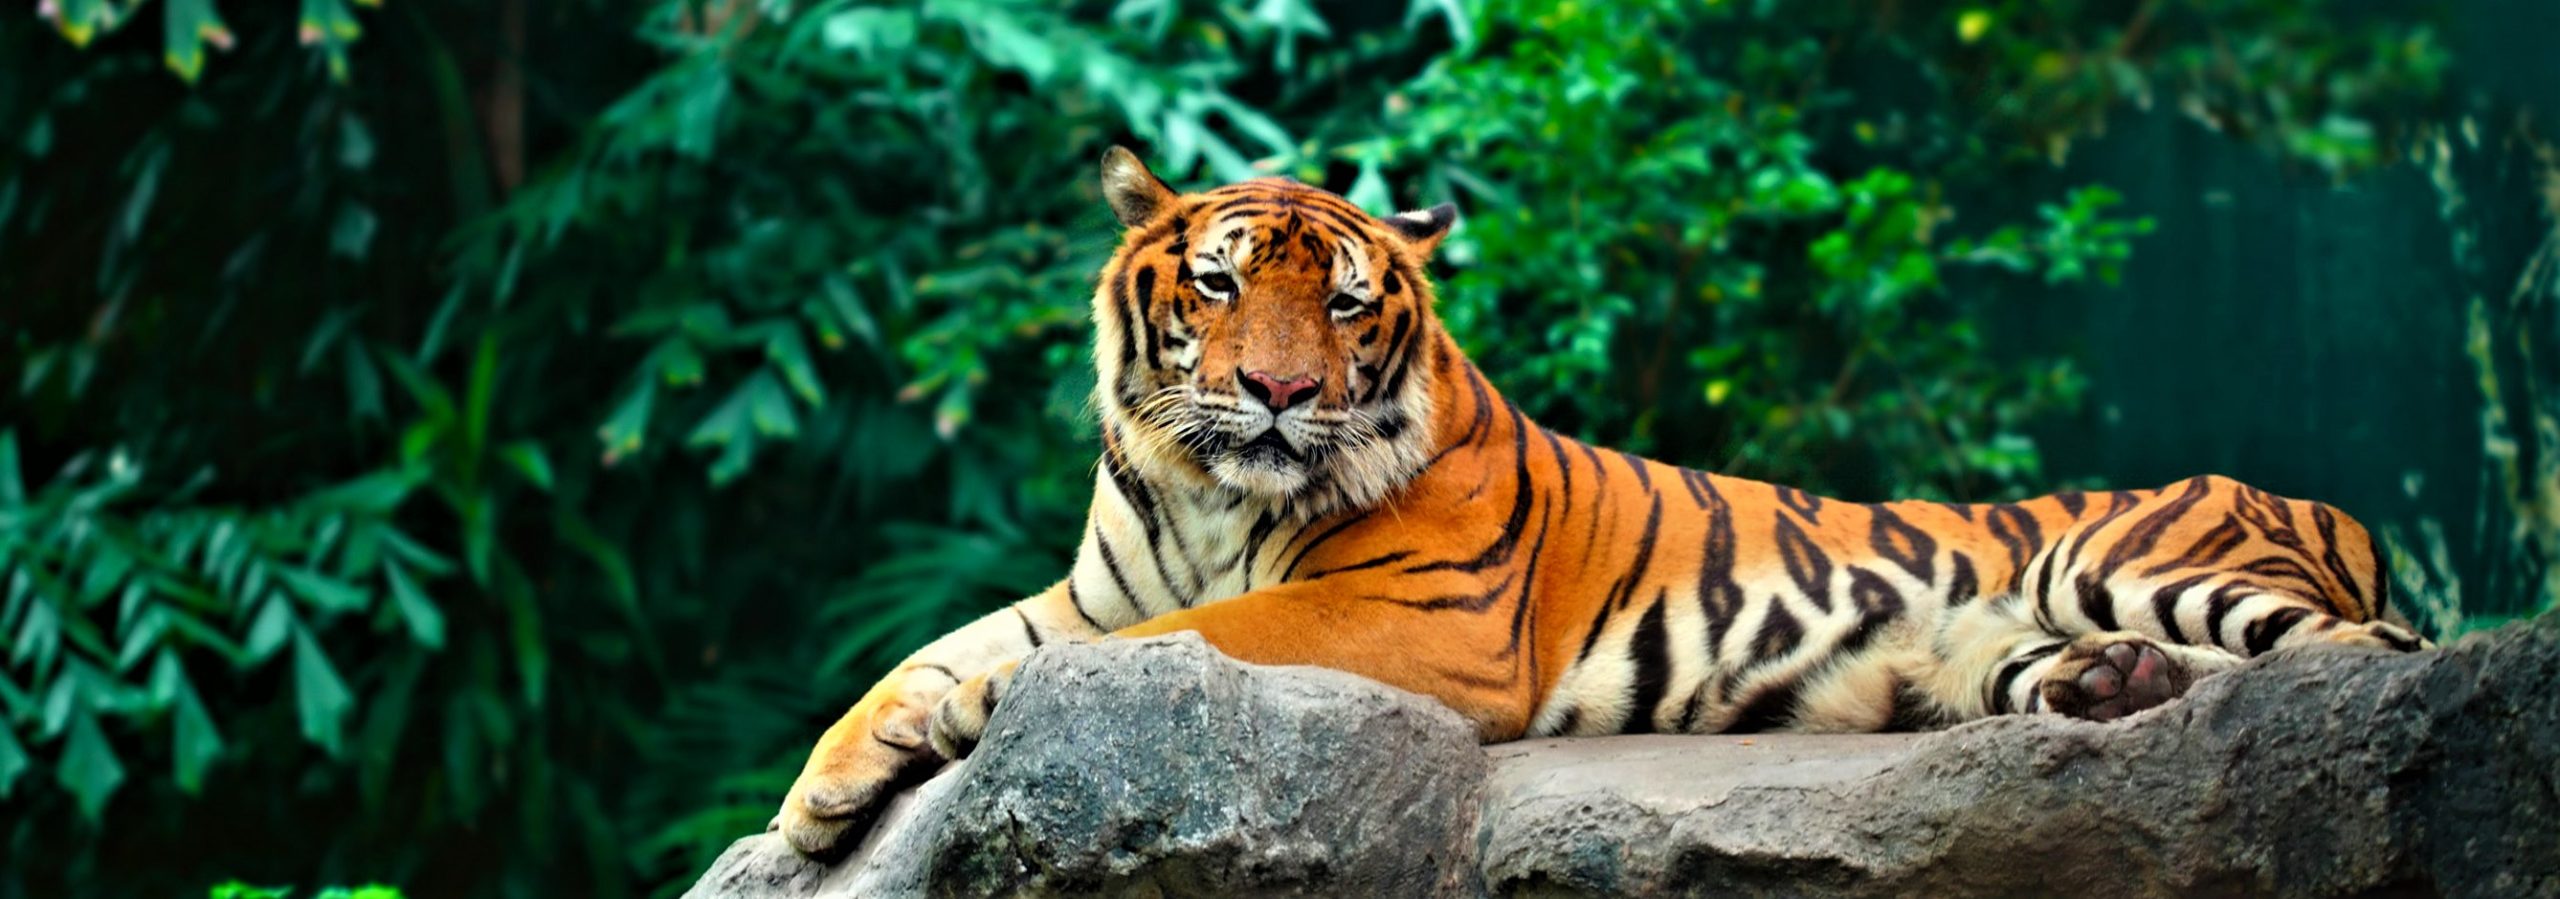 Έριξαν νερό με το λάστιχο σε μια τίγρη: Αυτό που ακολούθησε δεν το φαντάζεστε (βίντεο)